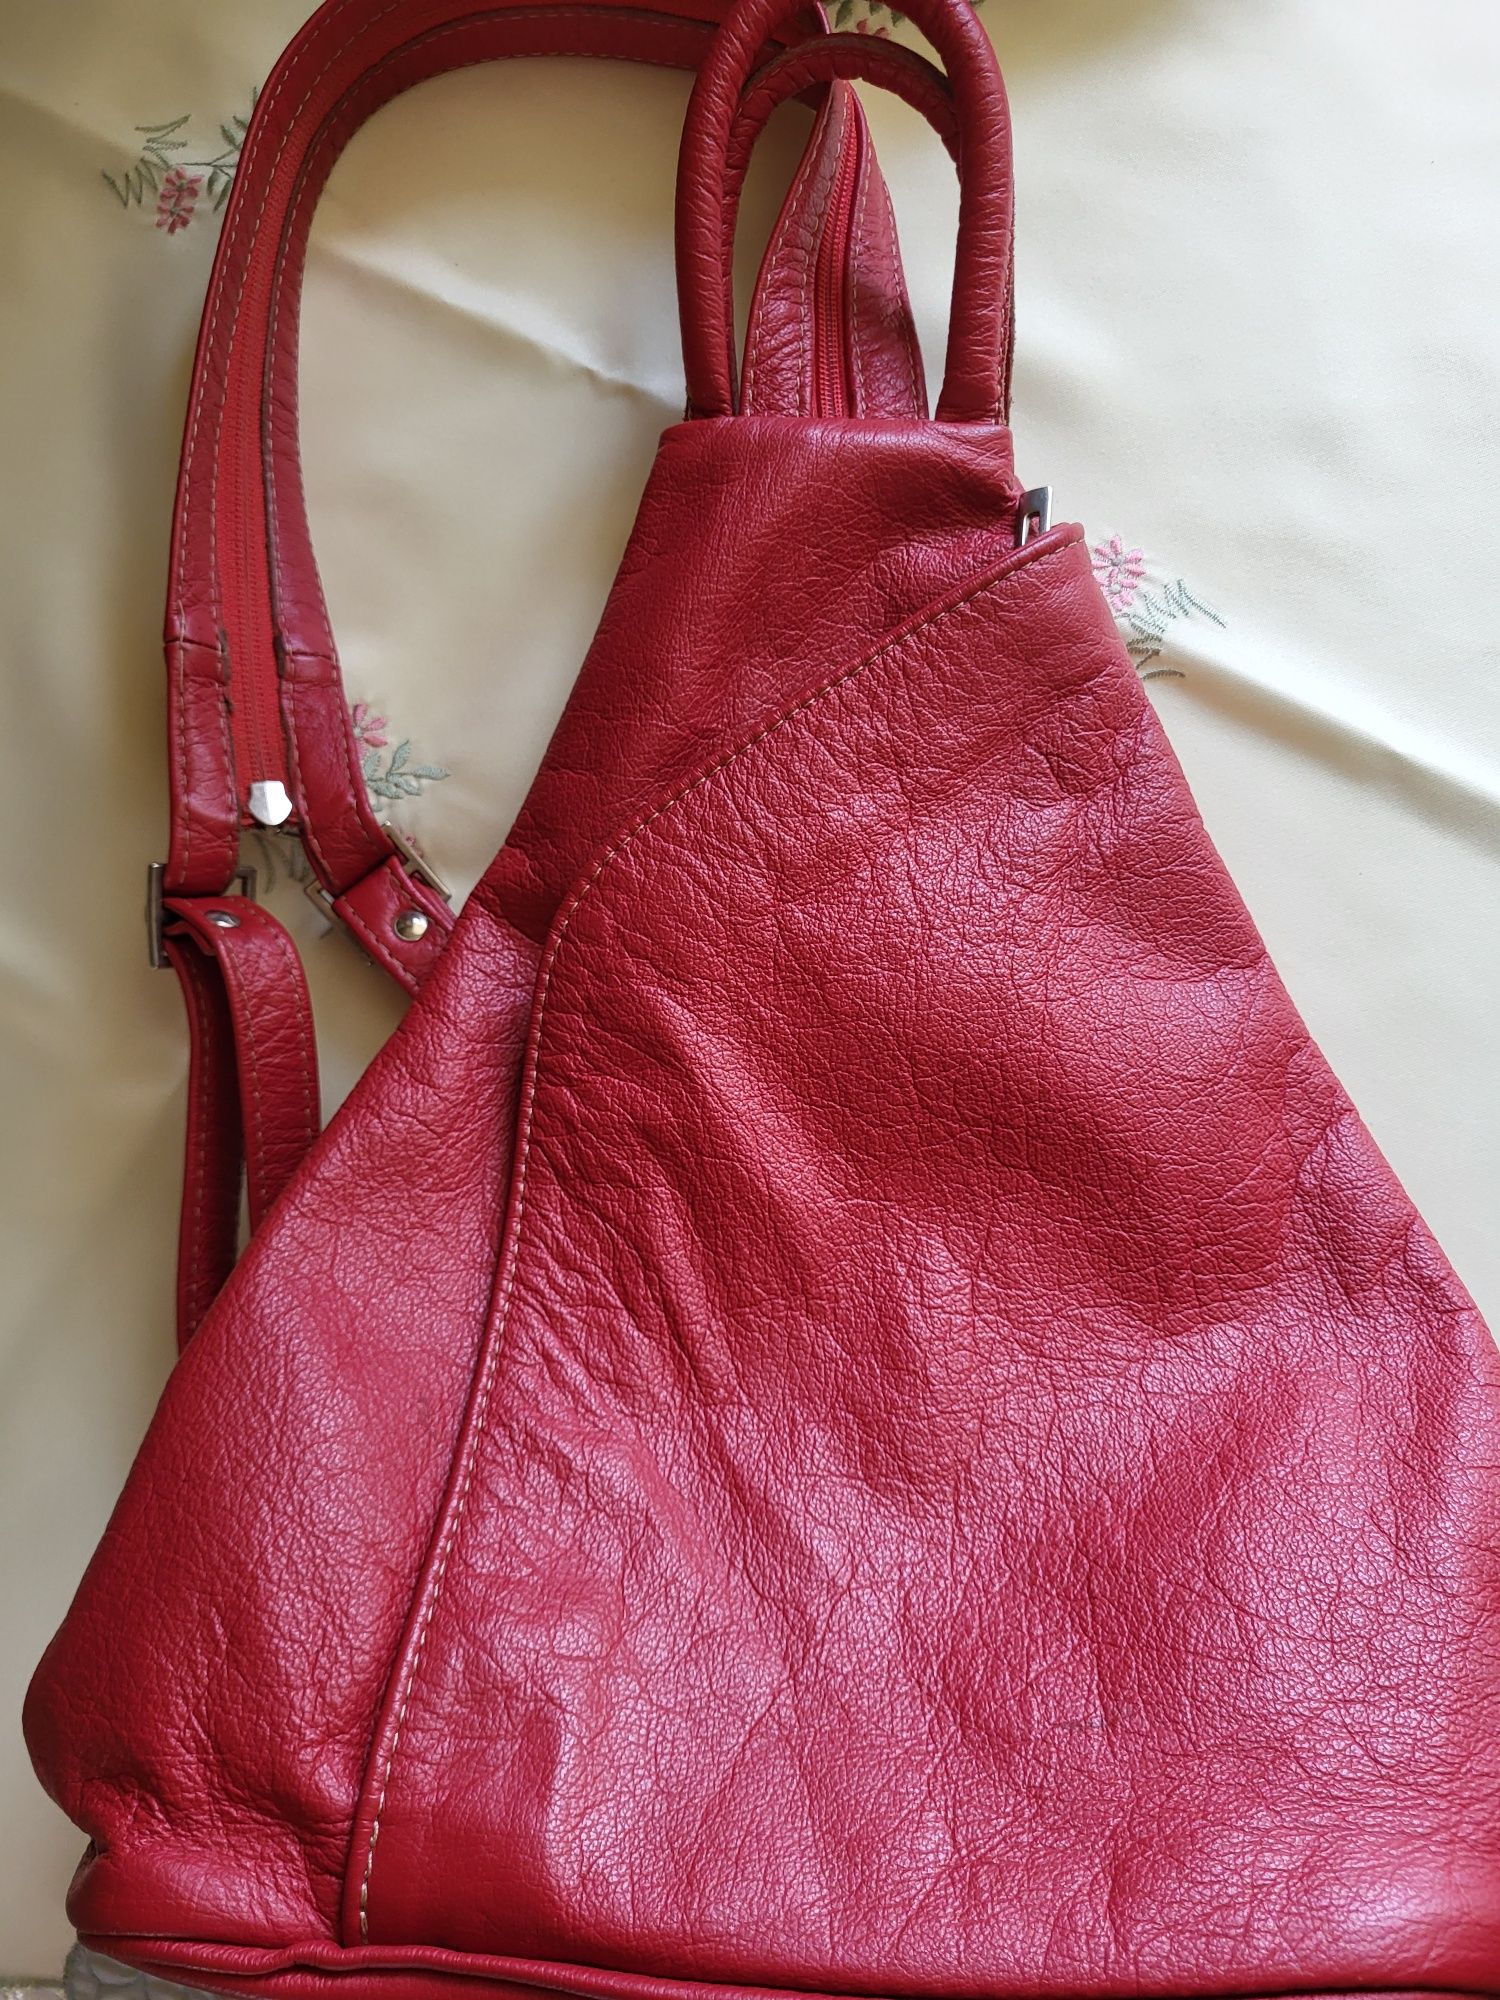 Plecak czerwony o pięknym odcieniu nowy nieużywany